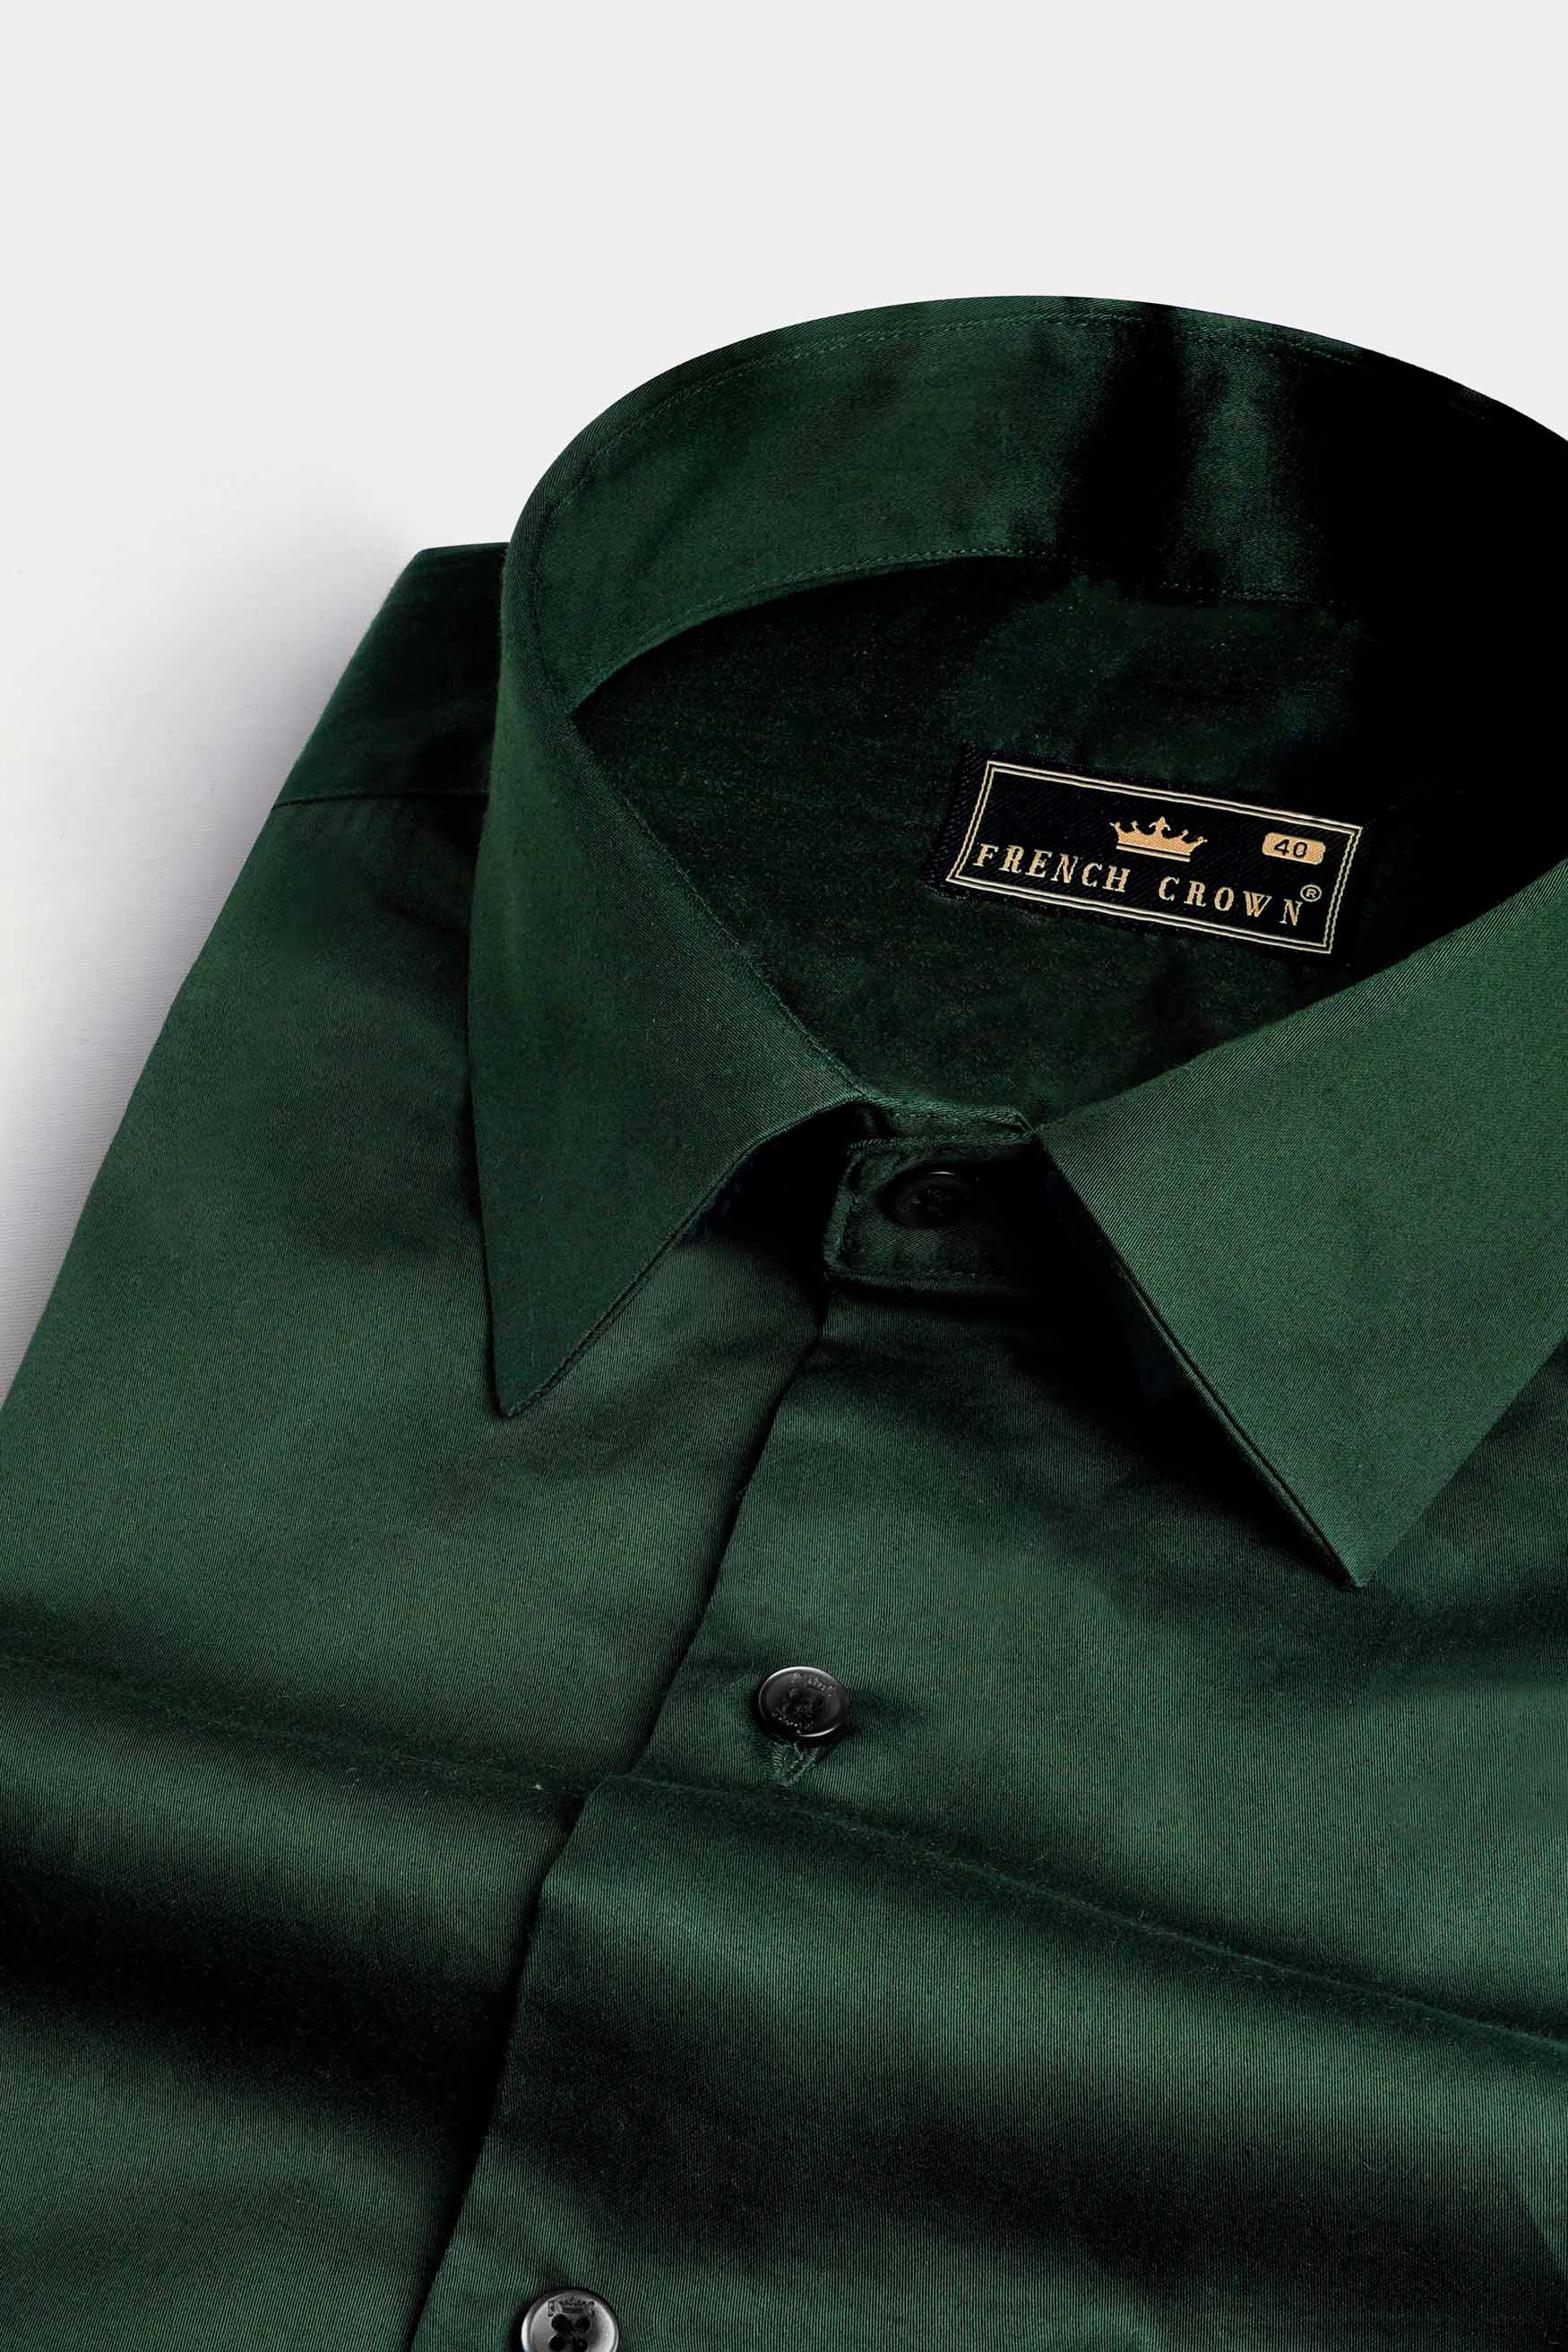 Everglade Green Subtle Sheen Super Soft Premium Cotton Shirt